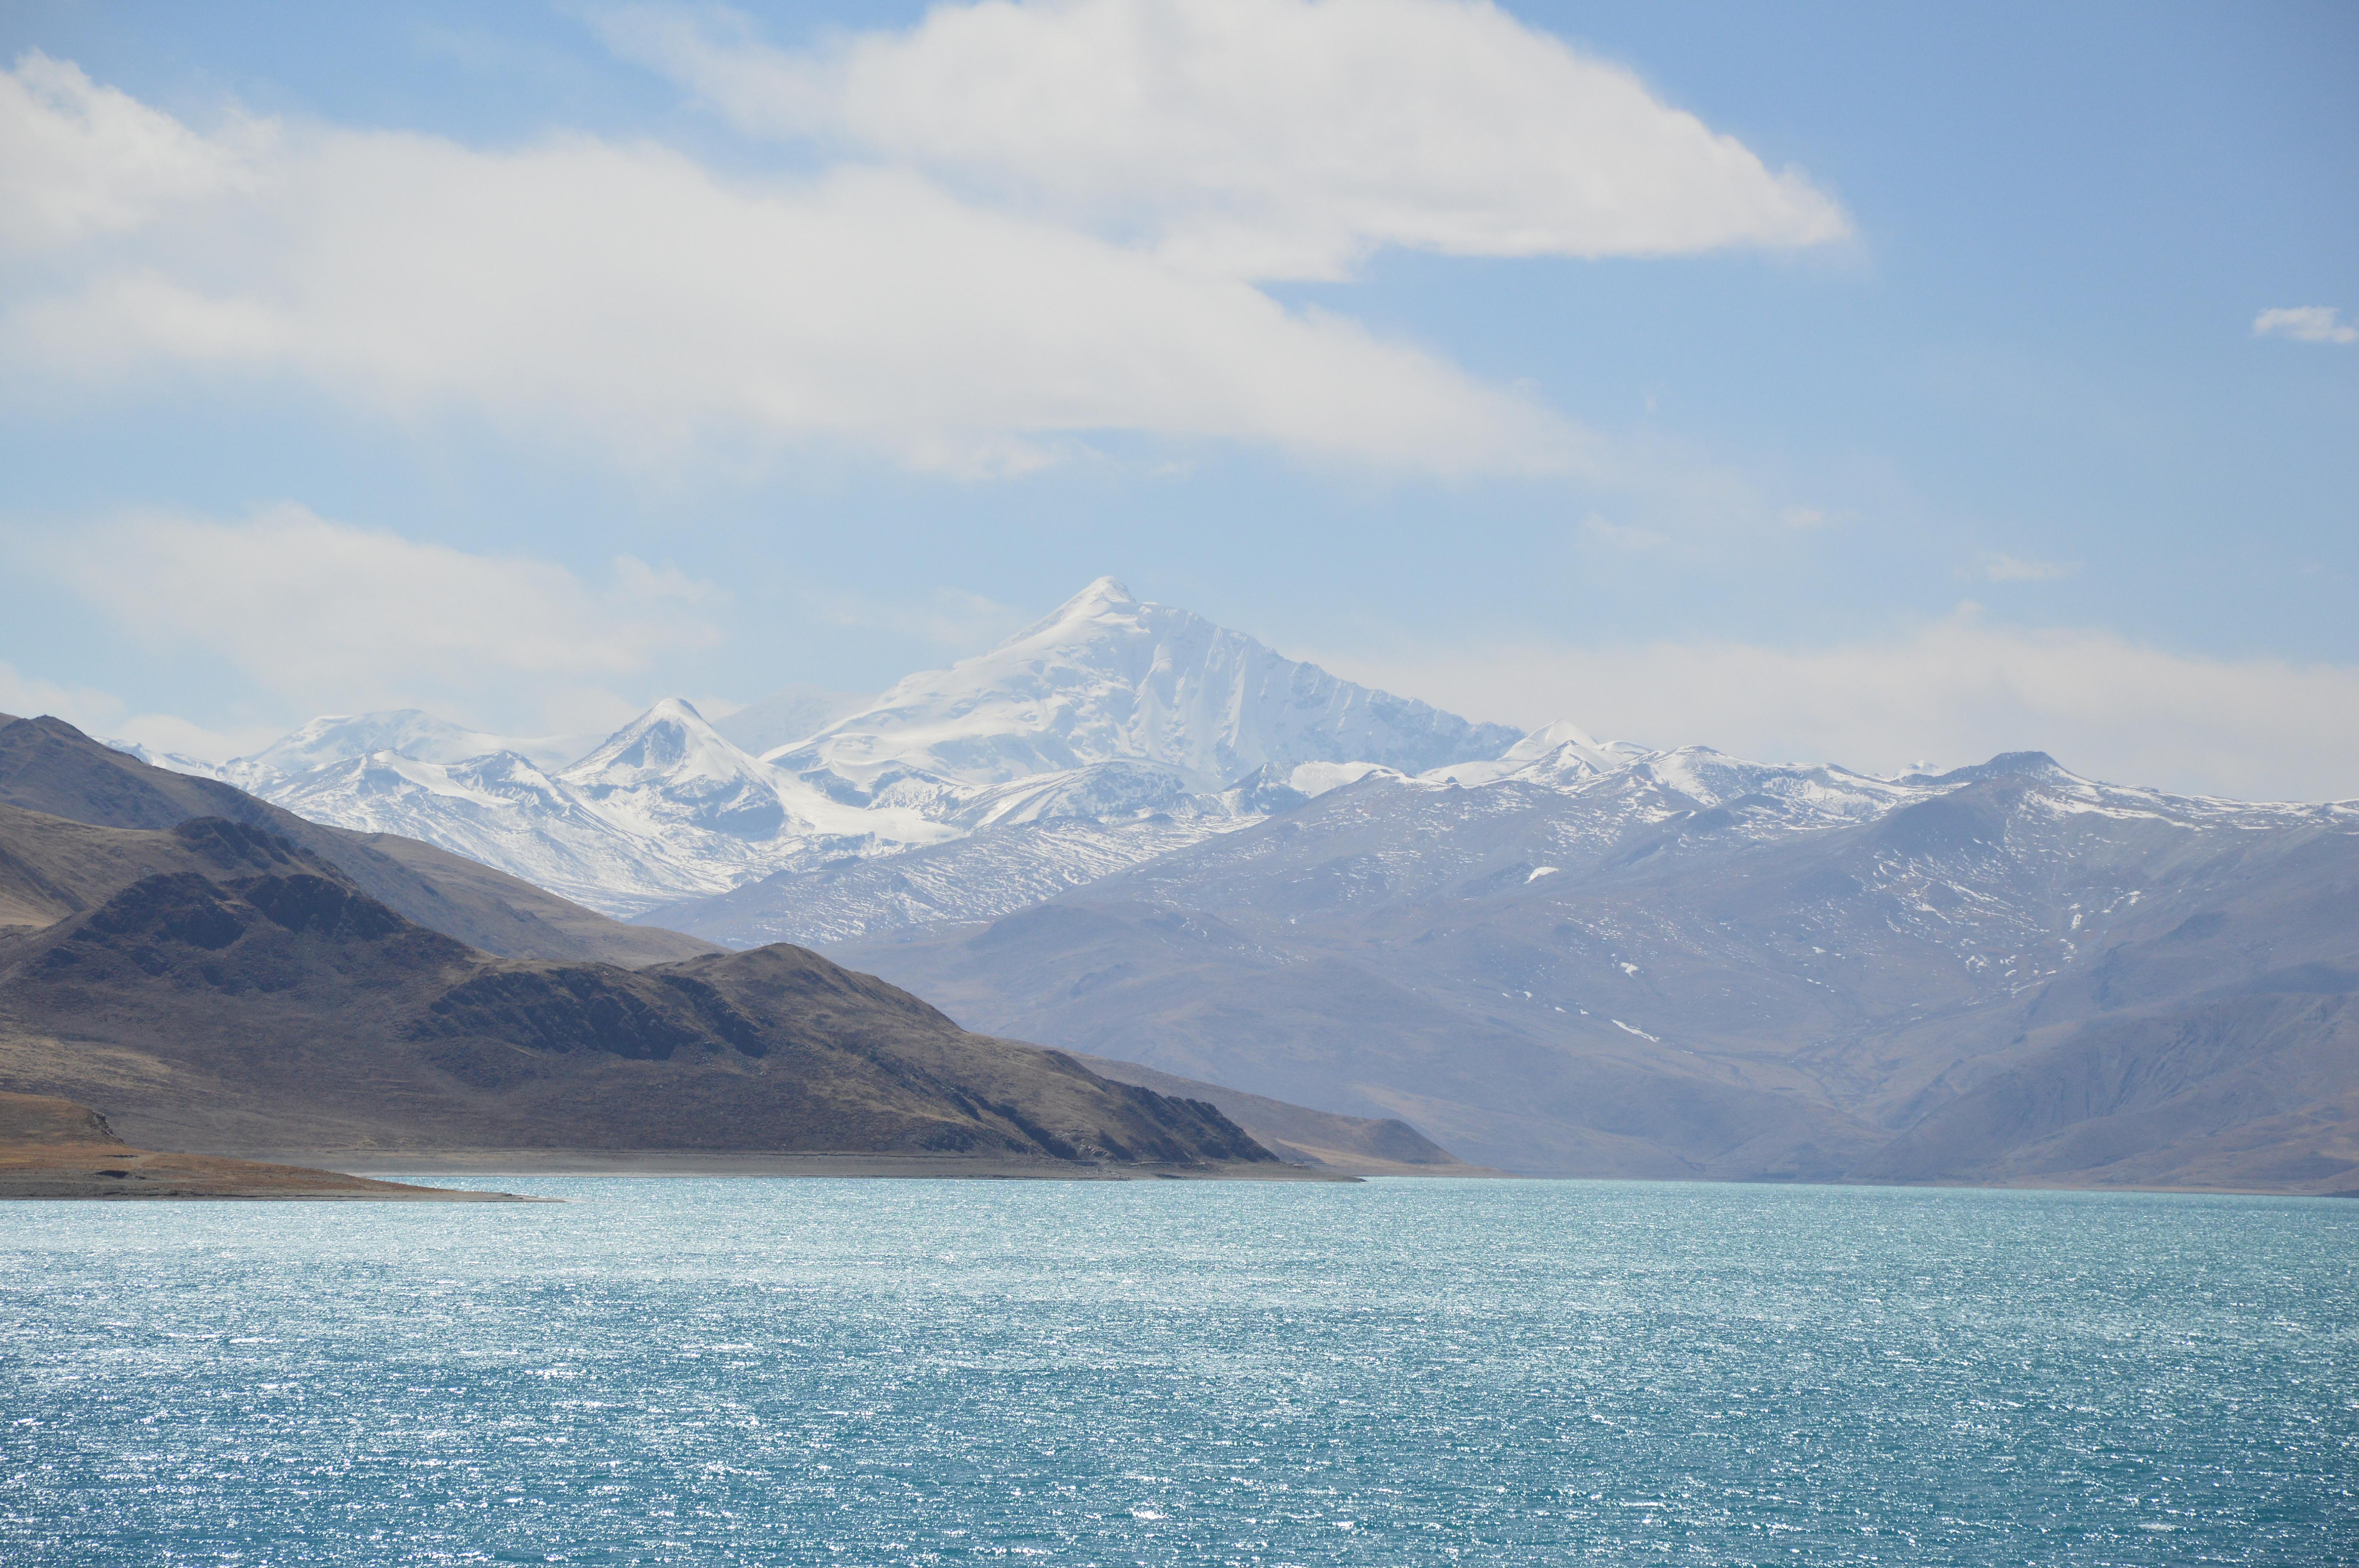 羊卓雍措面积675平方千米,湖面海拔4,441米.从拉萨